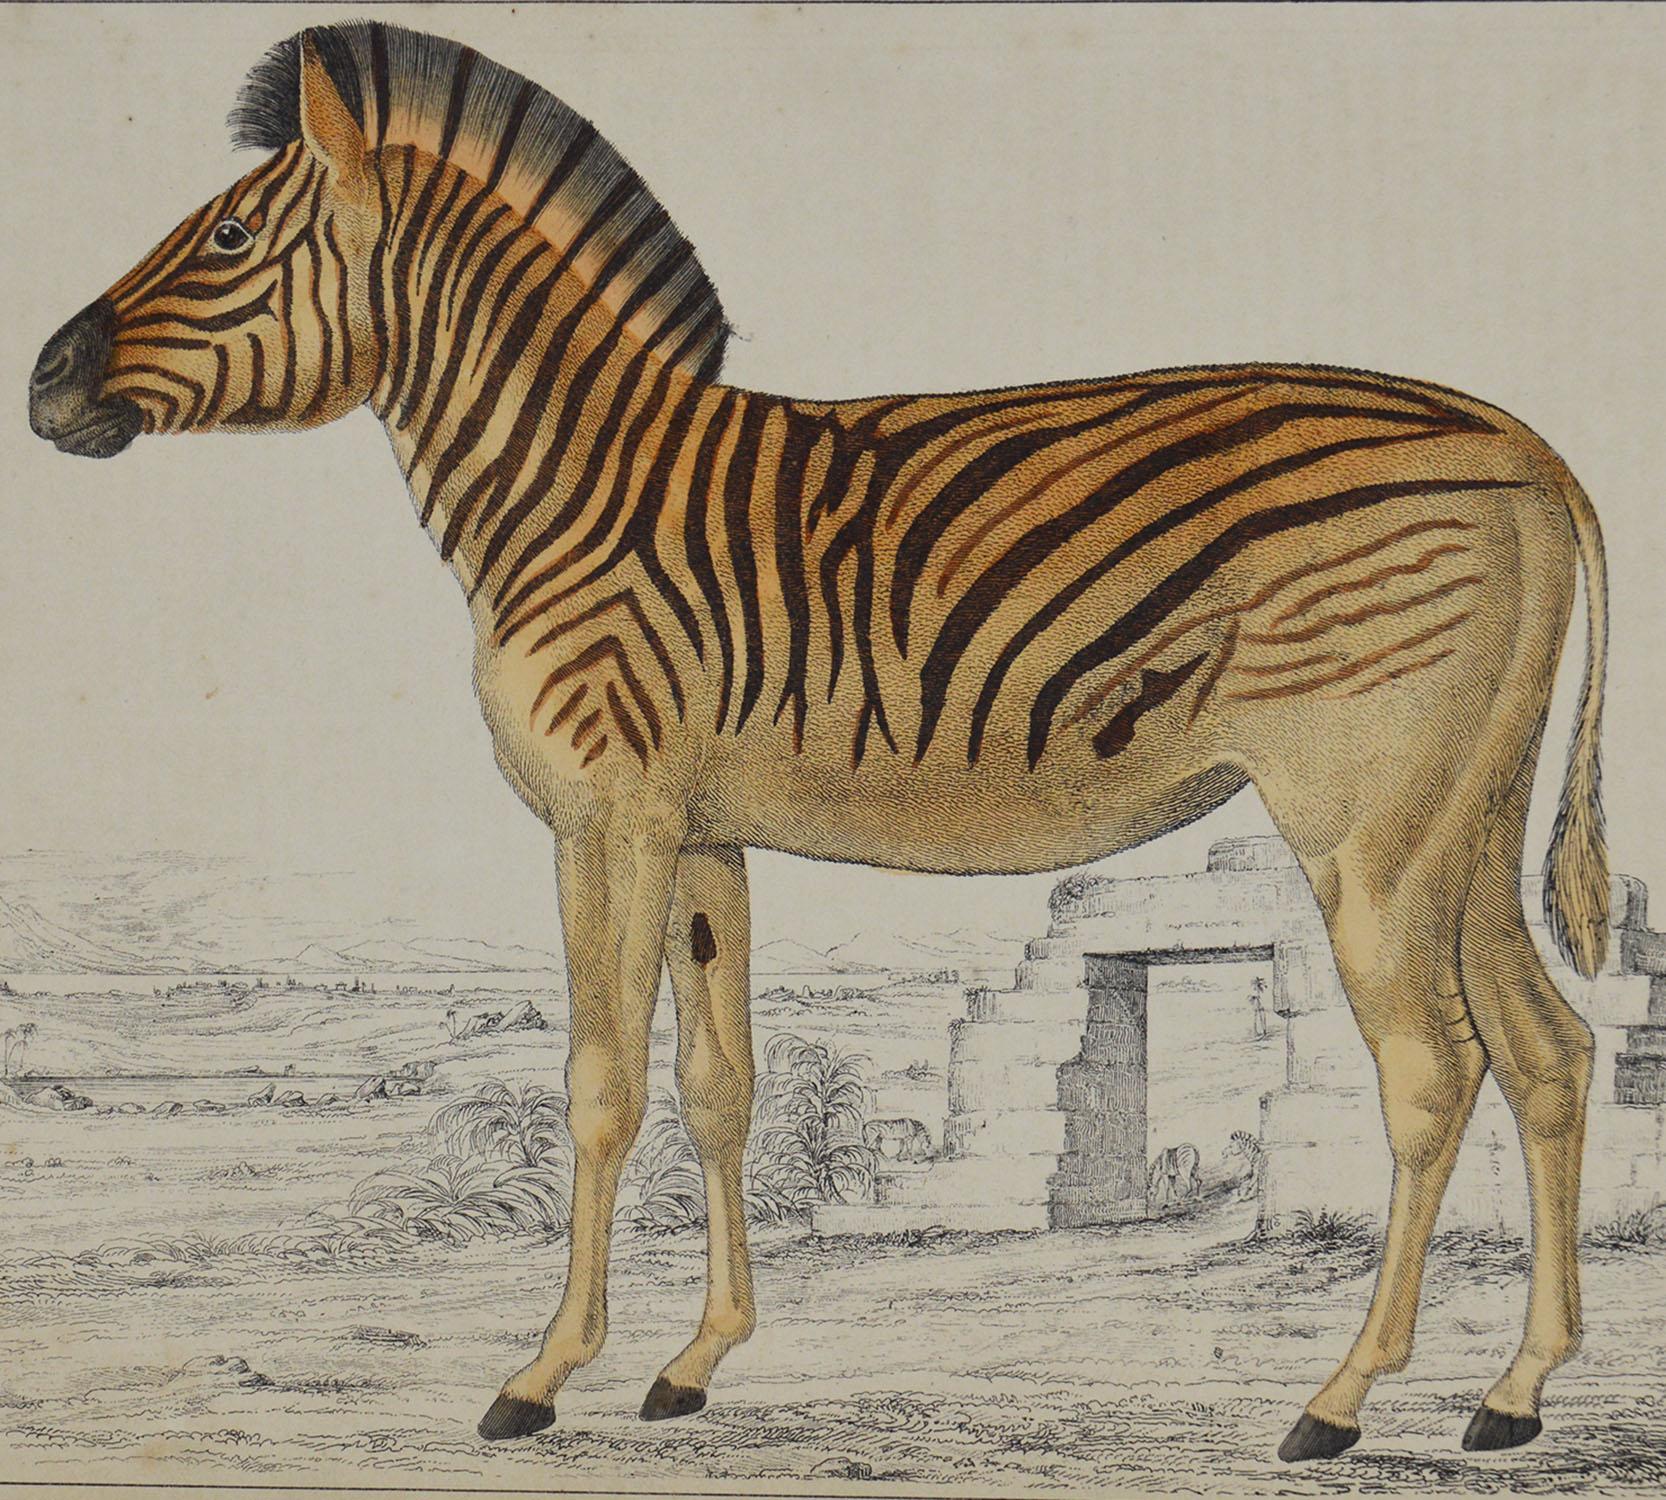 Folk Art Original Antique Print of a Zebra, 1847 'Unframed'